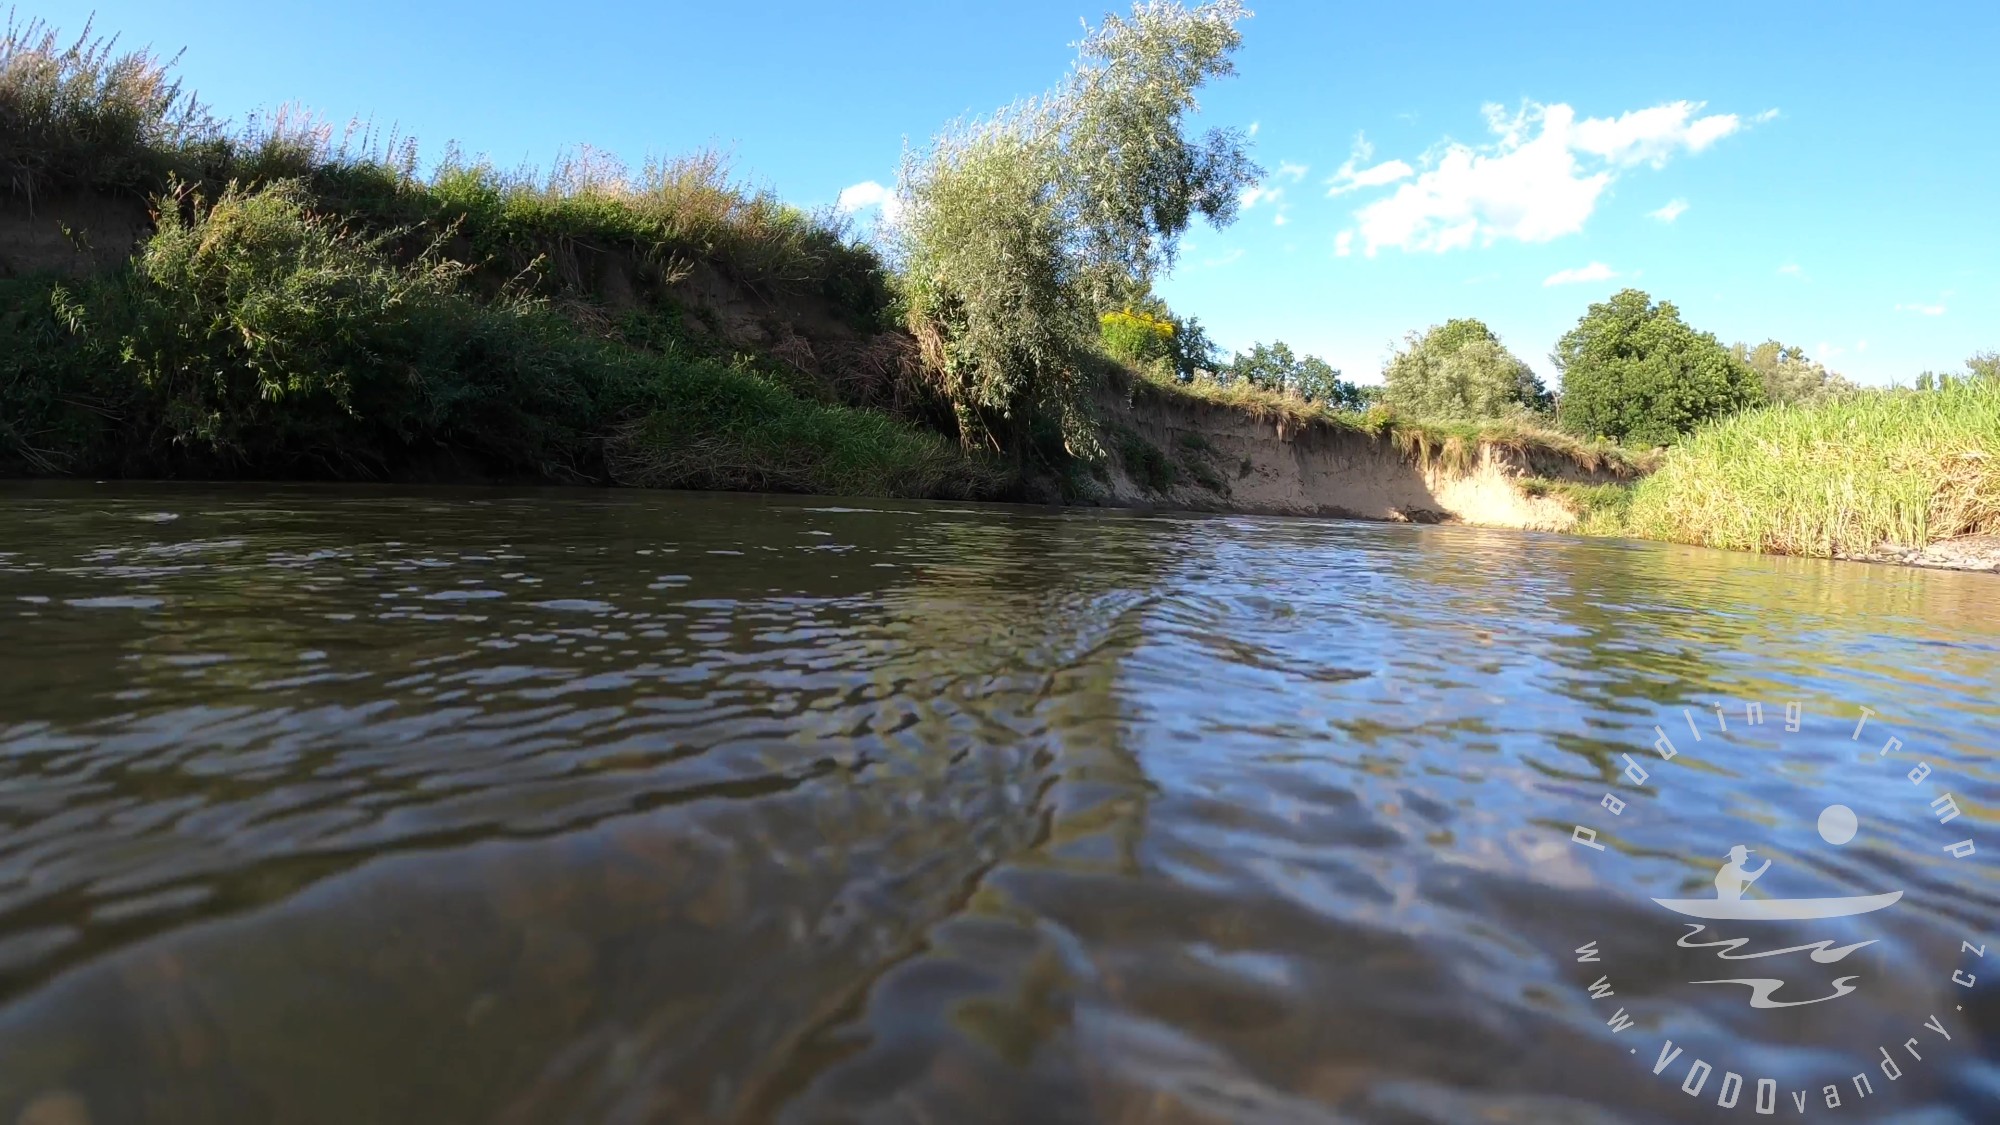 Vodácká putování na řece a náhlé stmívání | Kánoe Gumotex Palava, splutí řeky